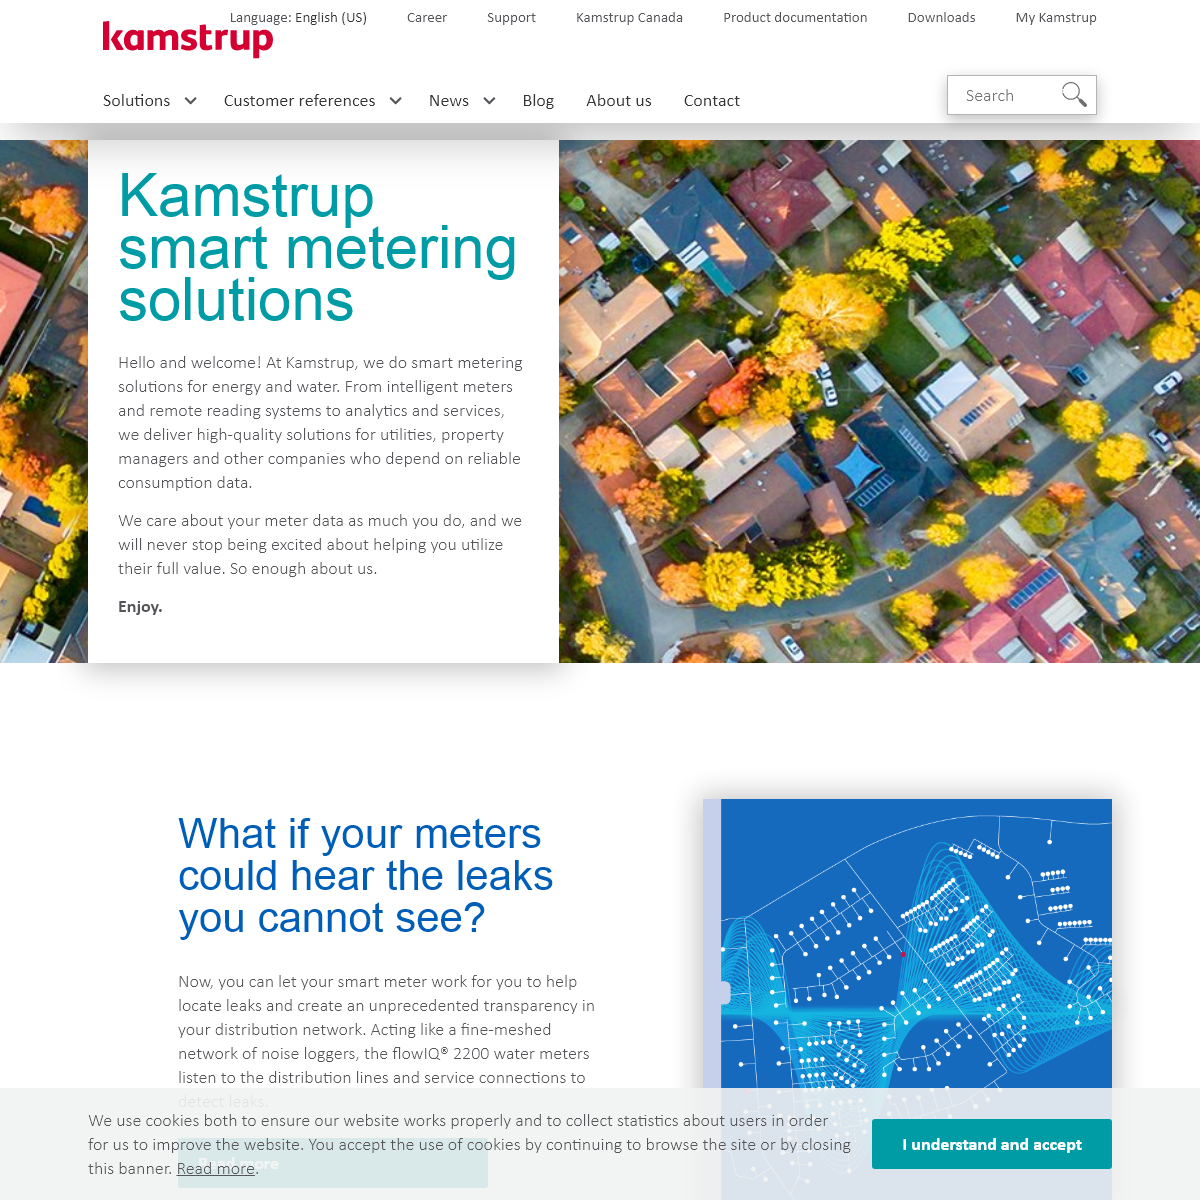 A complete backup of kamstrup.com